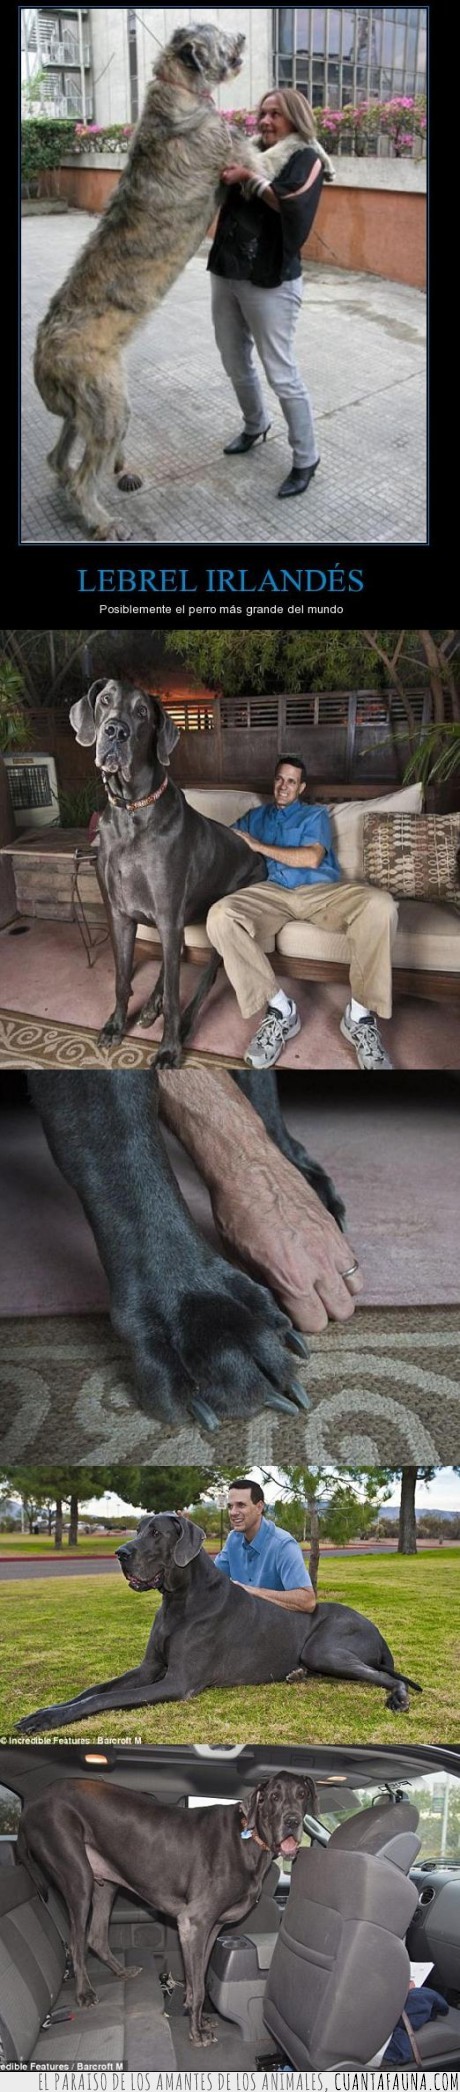 14732 - GEORGE - Es el perro más grande del mundo y es un Gran Danés